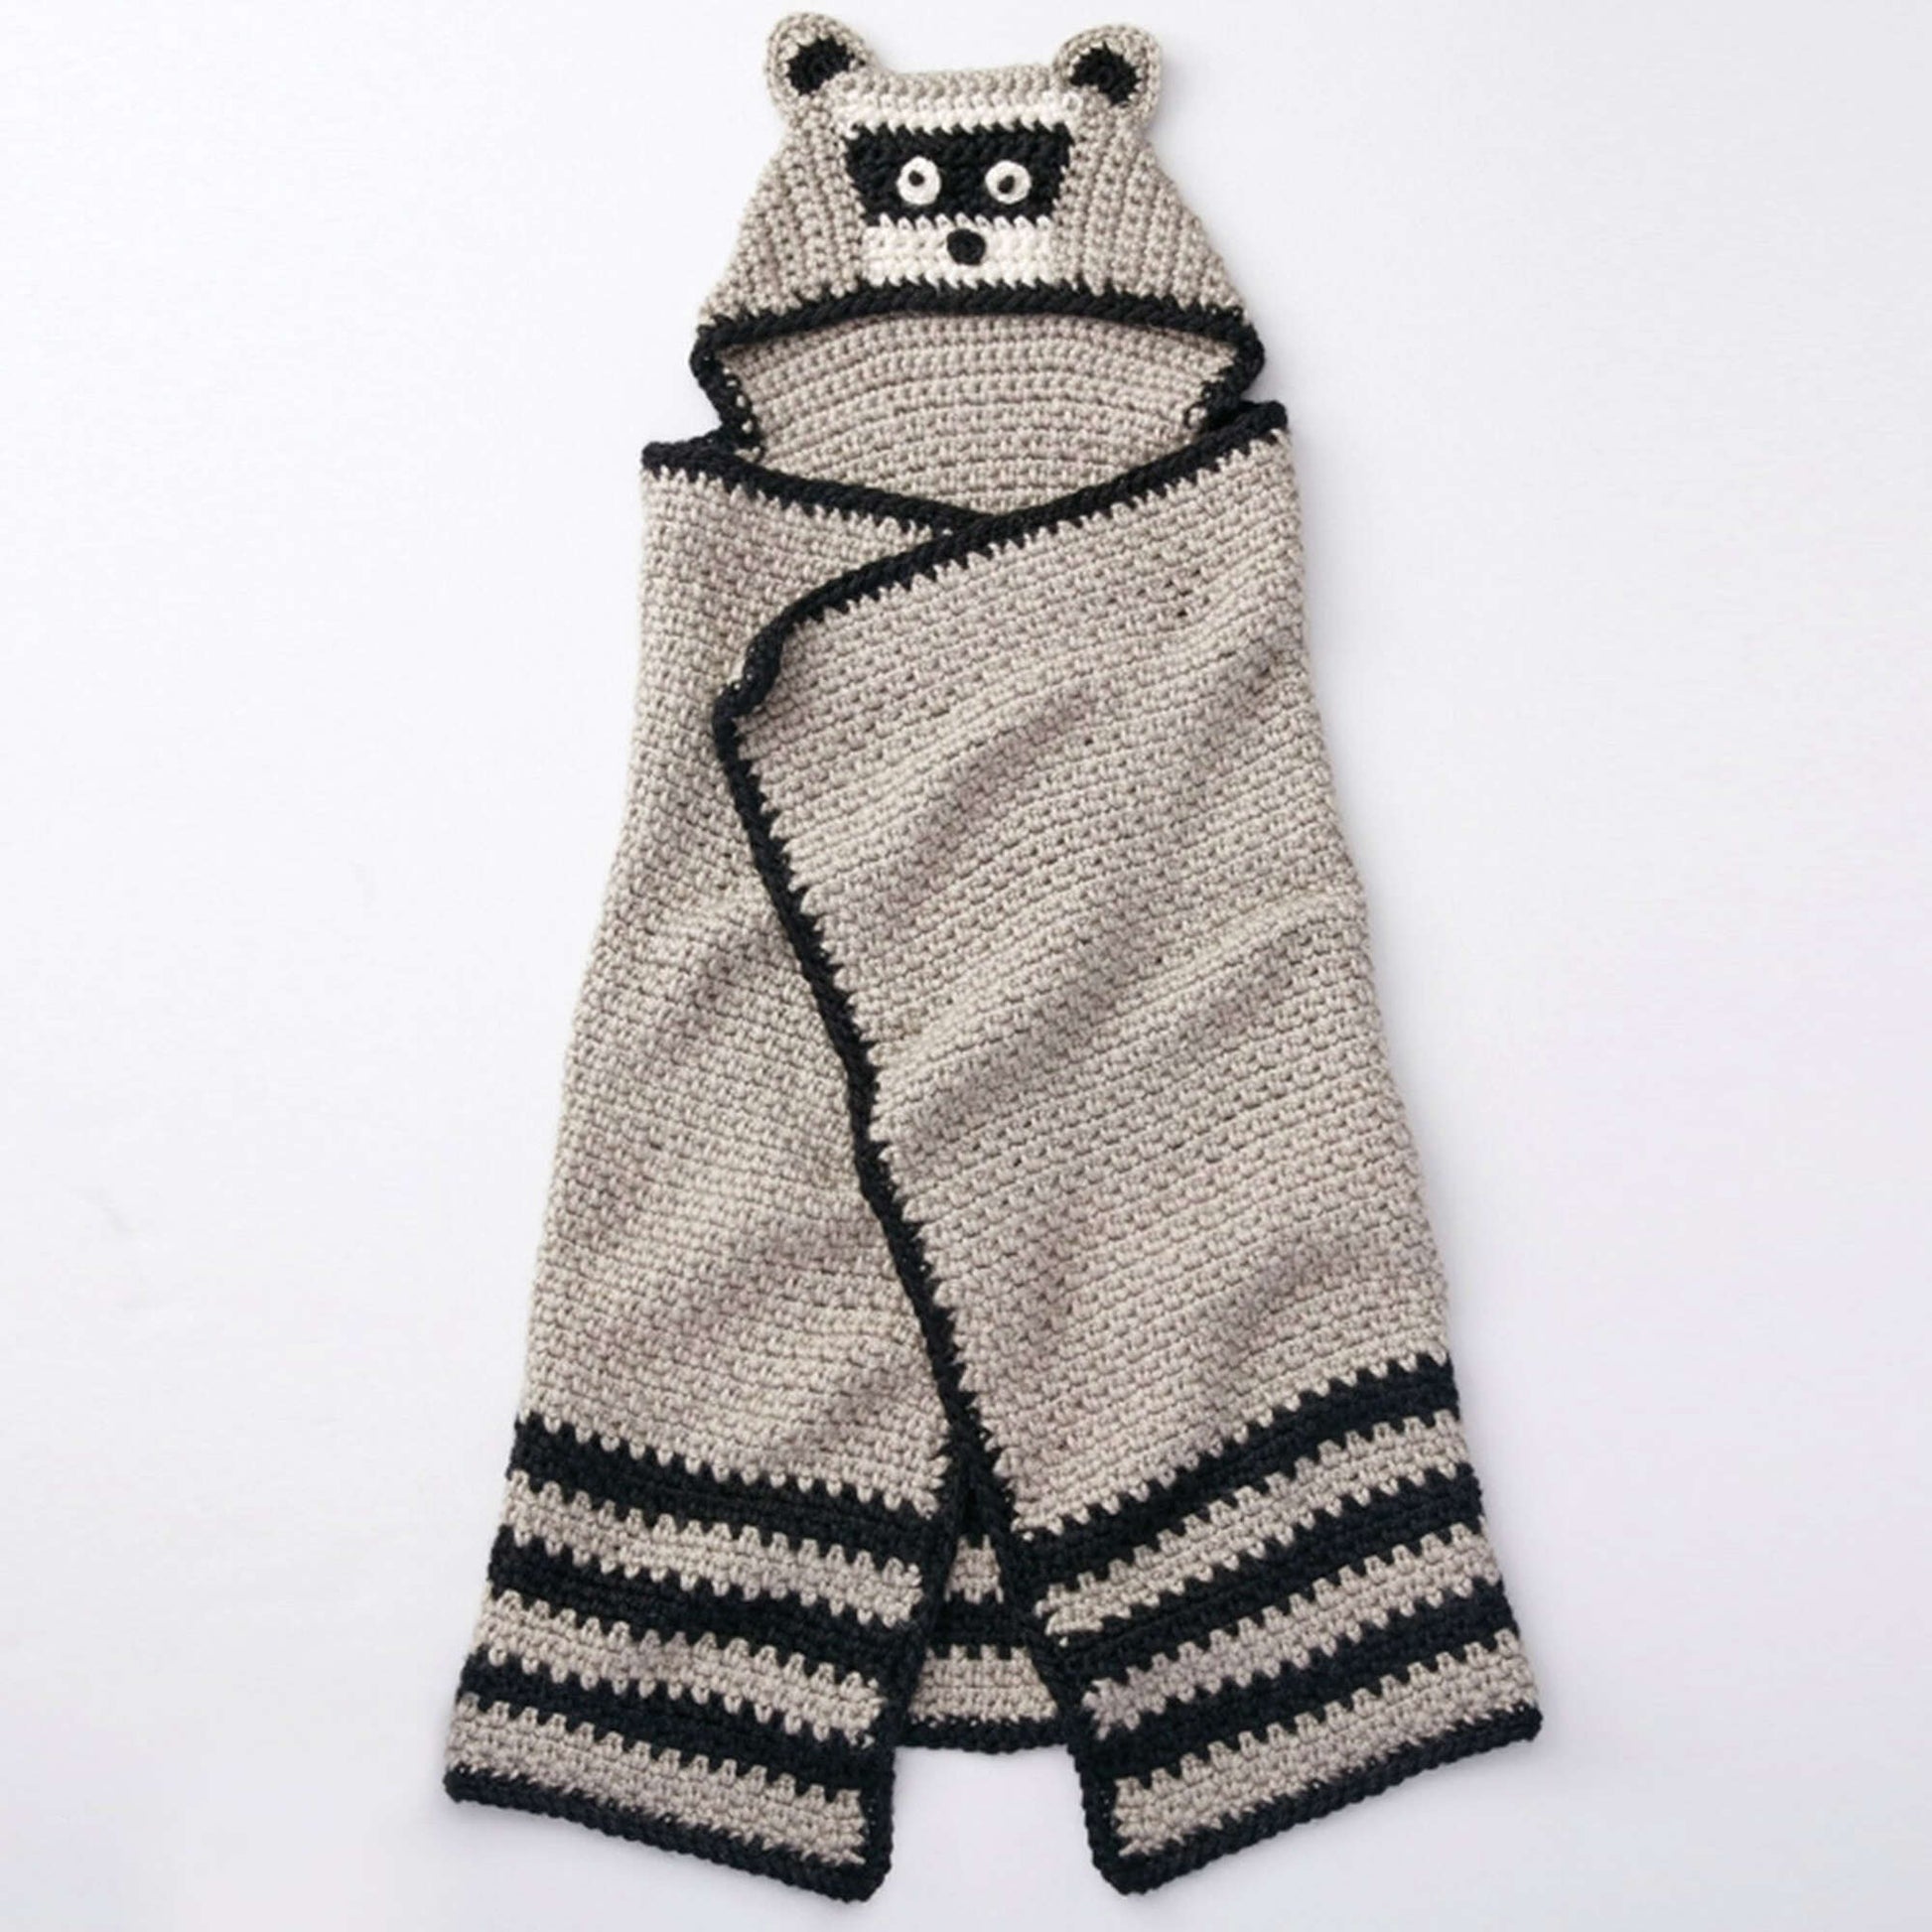 Bernat Knit Blanket With Hood Pattern